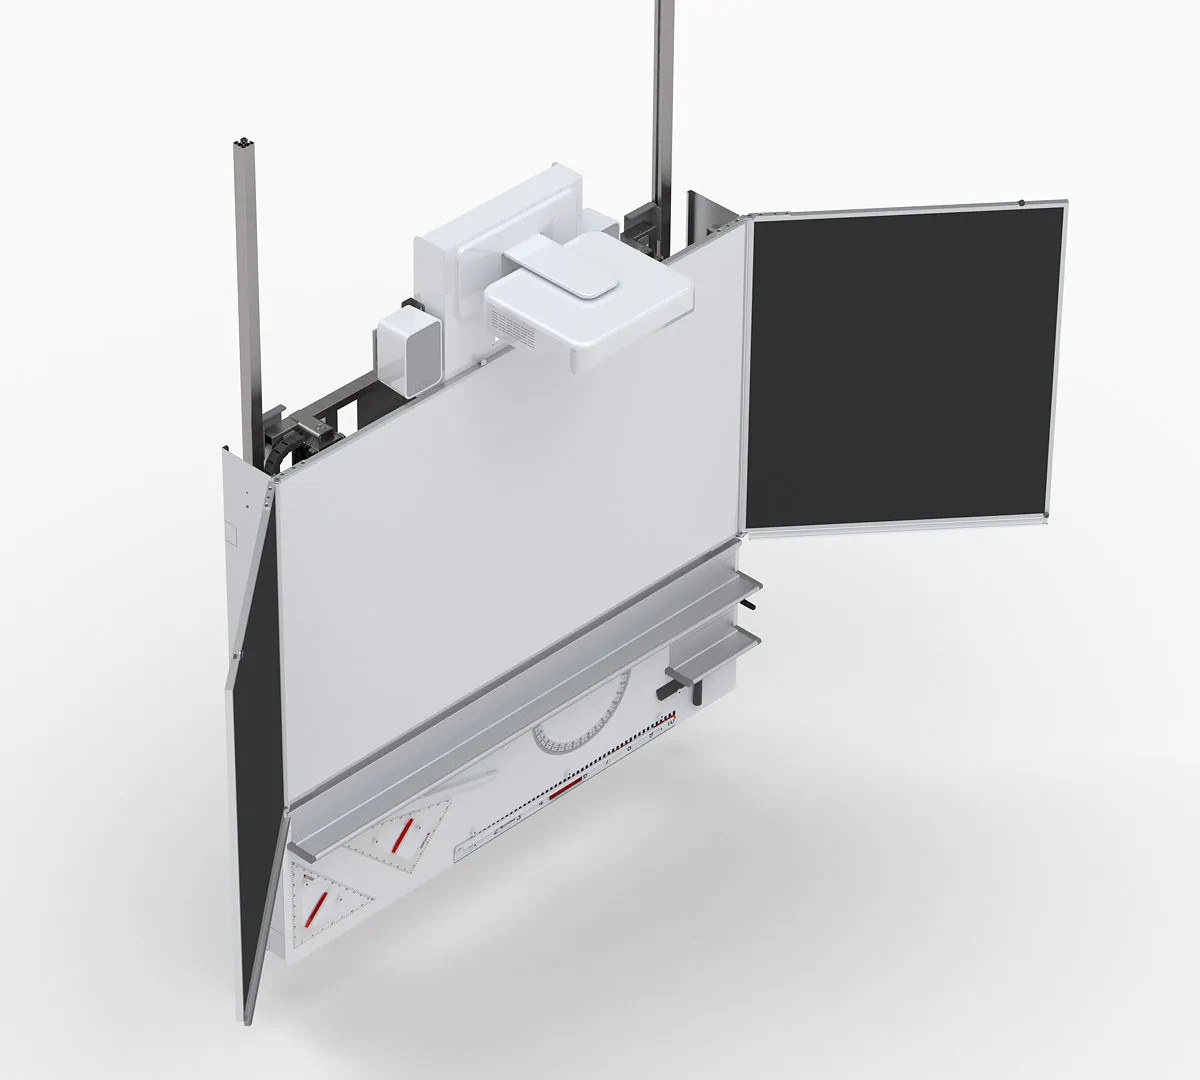 Beameranlage Wandtafelsystem maximale Helligkeit des Beamers Whiteboardfläche L+S design und technics made in Swiss